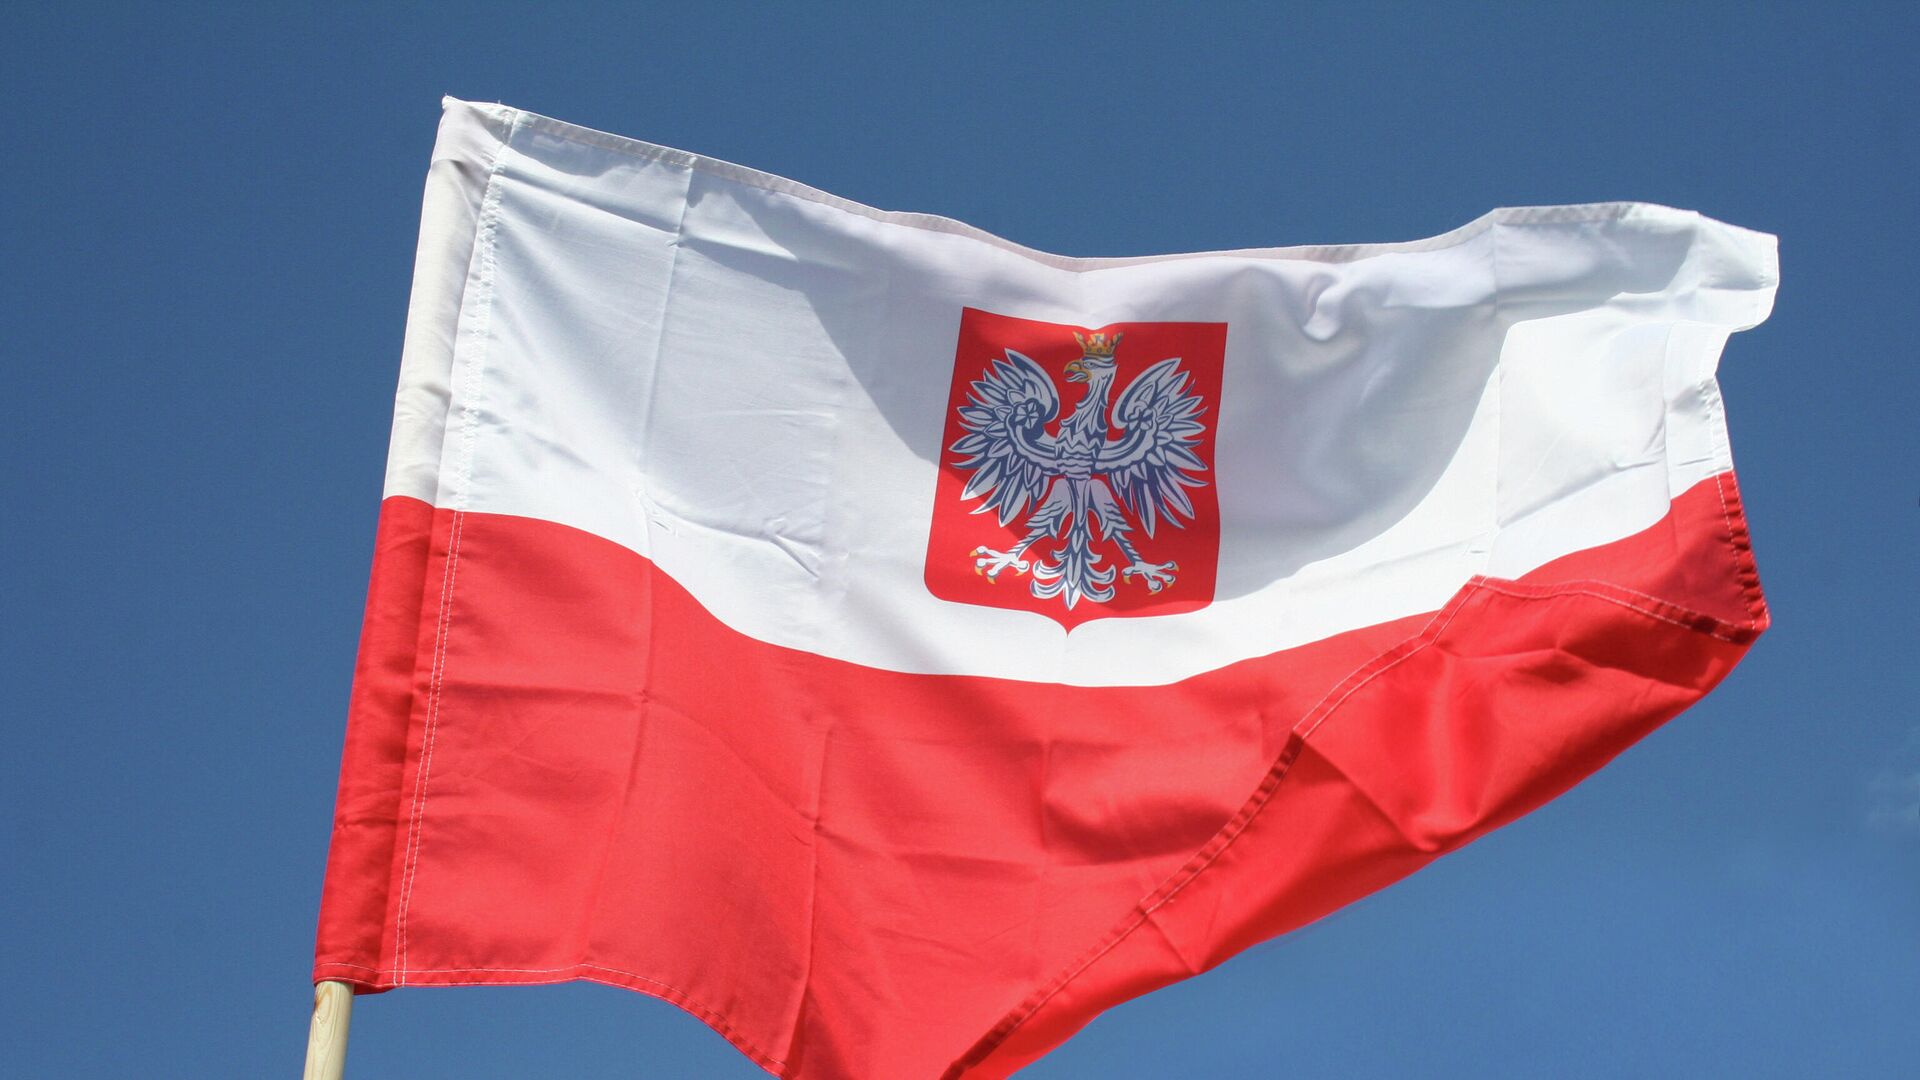 Флаг Польши, архивное фото - Sputnik Литва, 1920, 21.08.2021